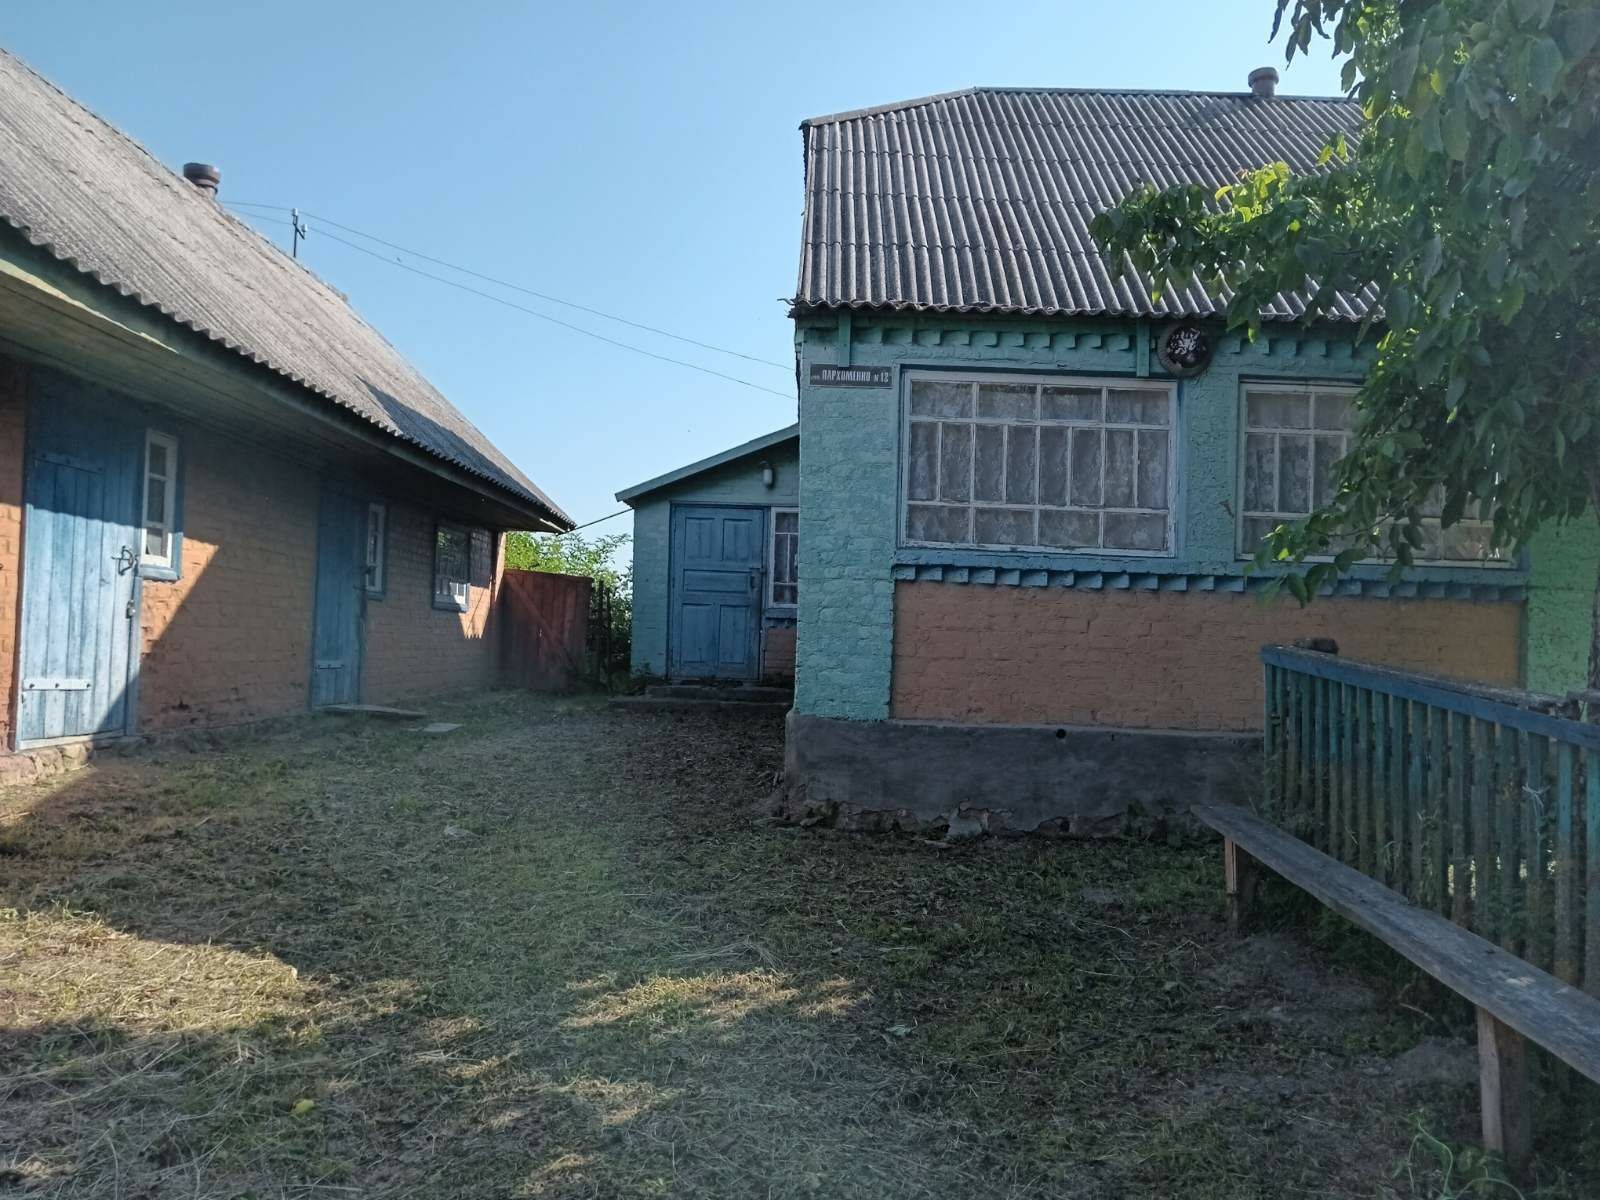 Продам будинок в селі Небіж Житомирської області